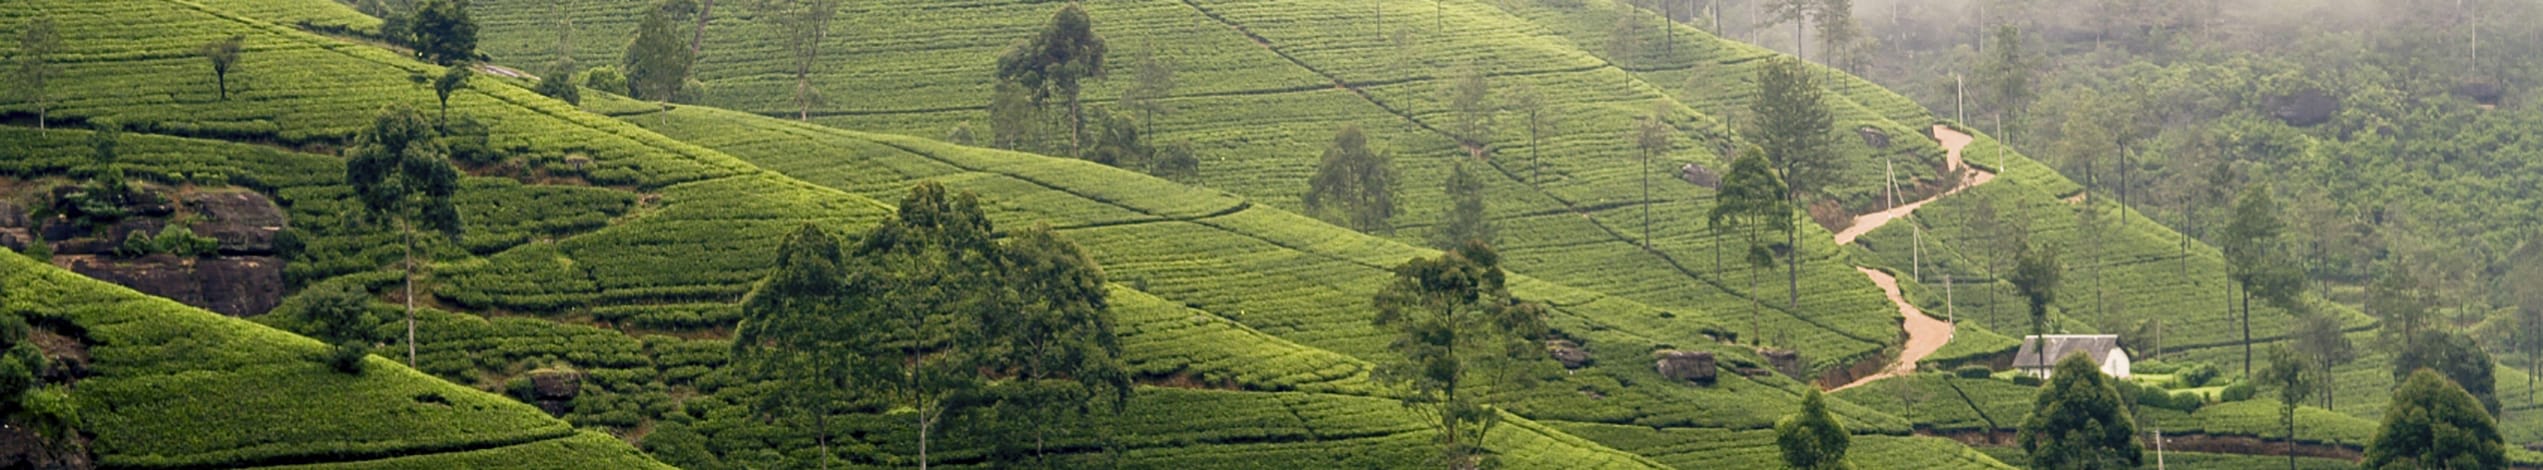 Teplantager i Sri Lanka